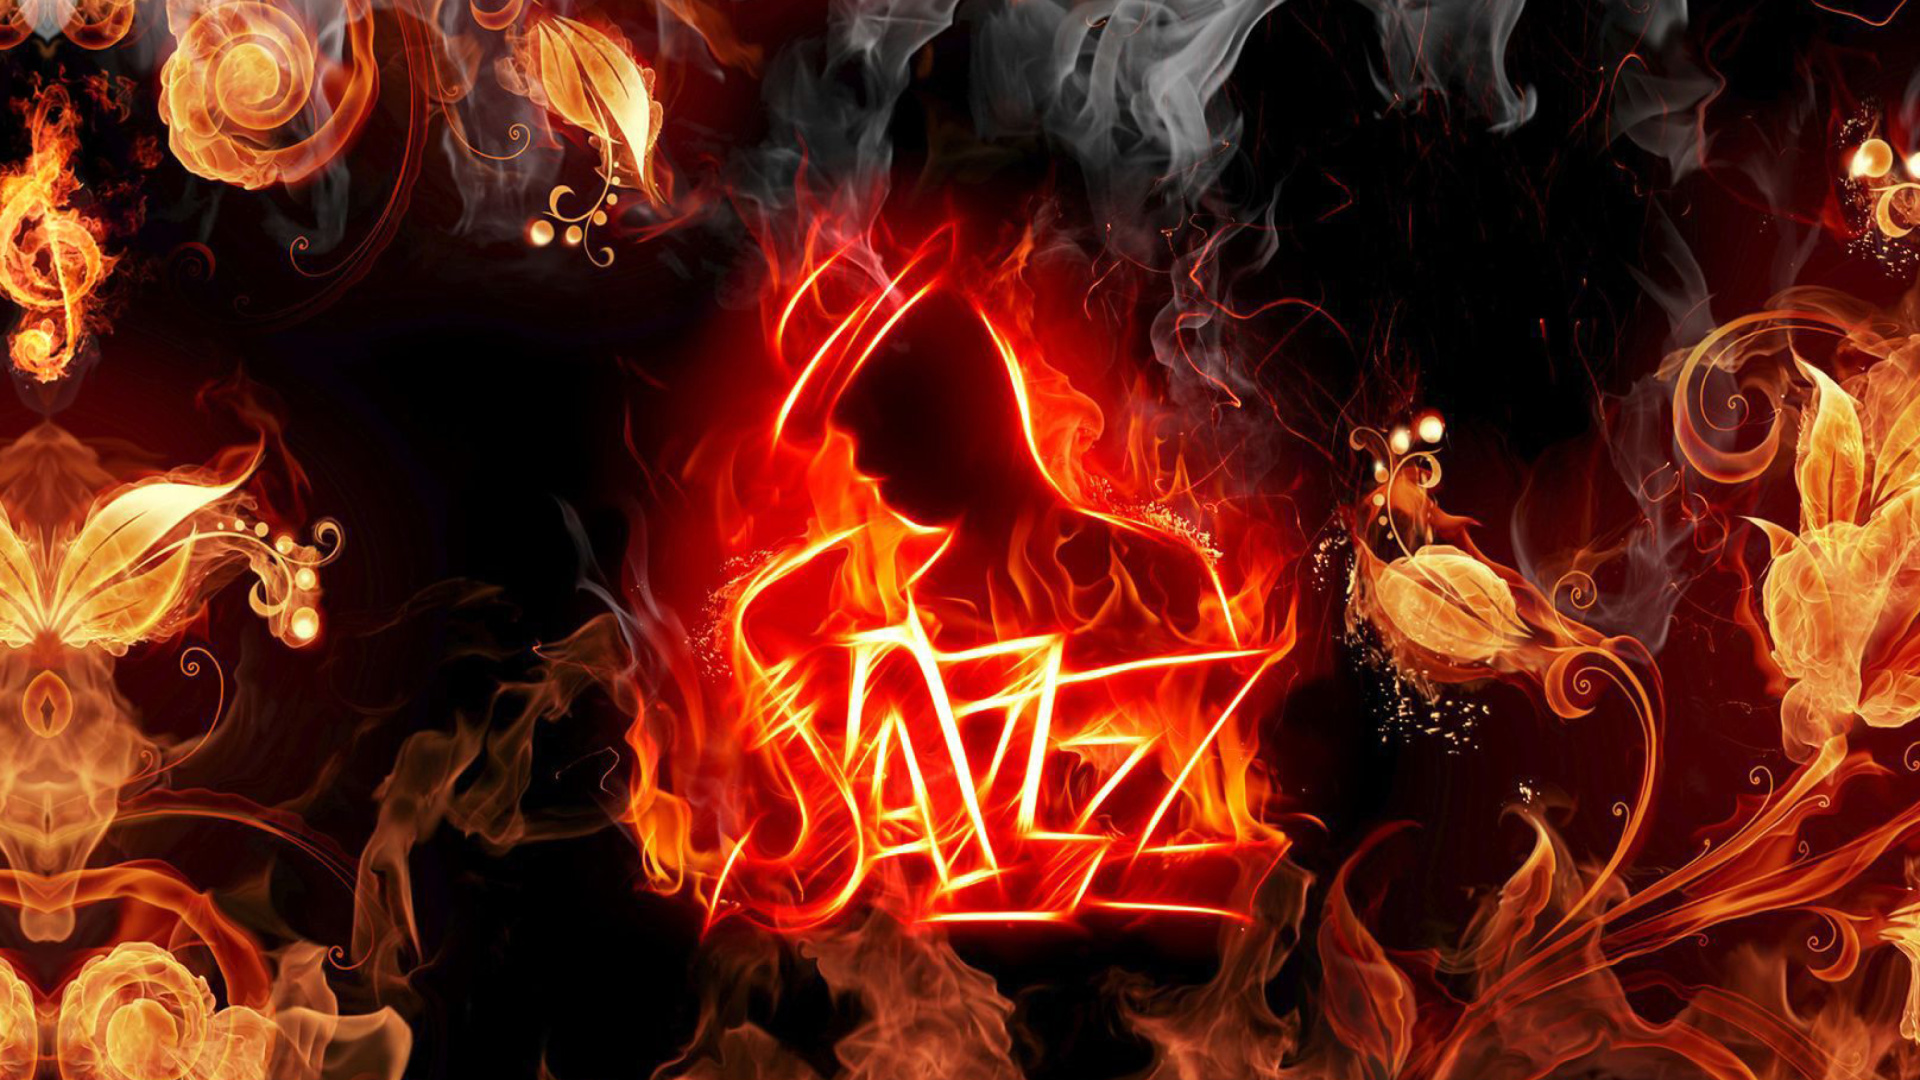 Das Jazz Fire HD Wallpaper 1920x1080